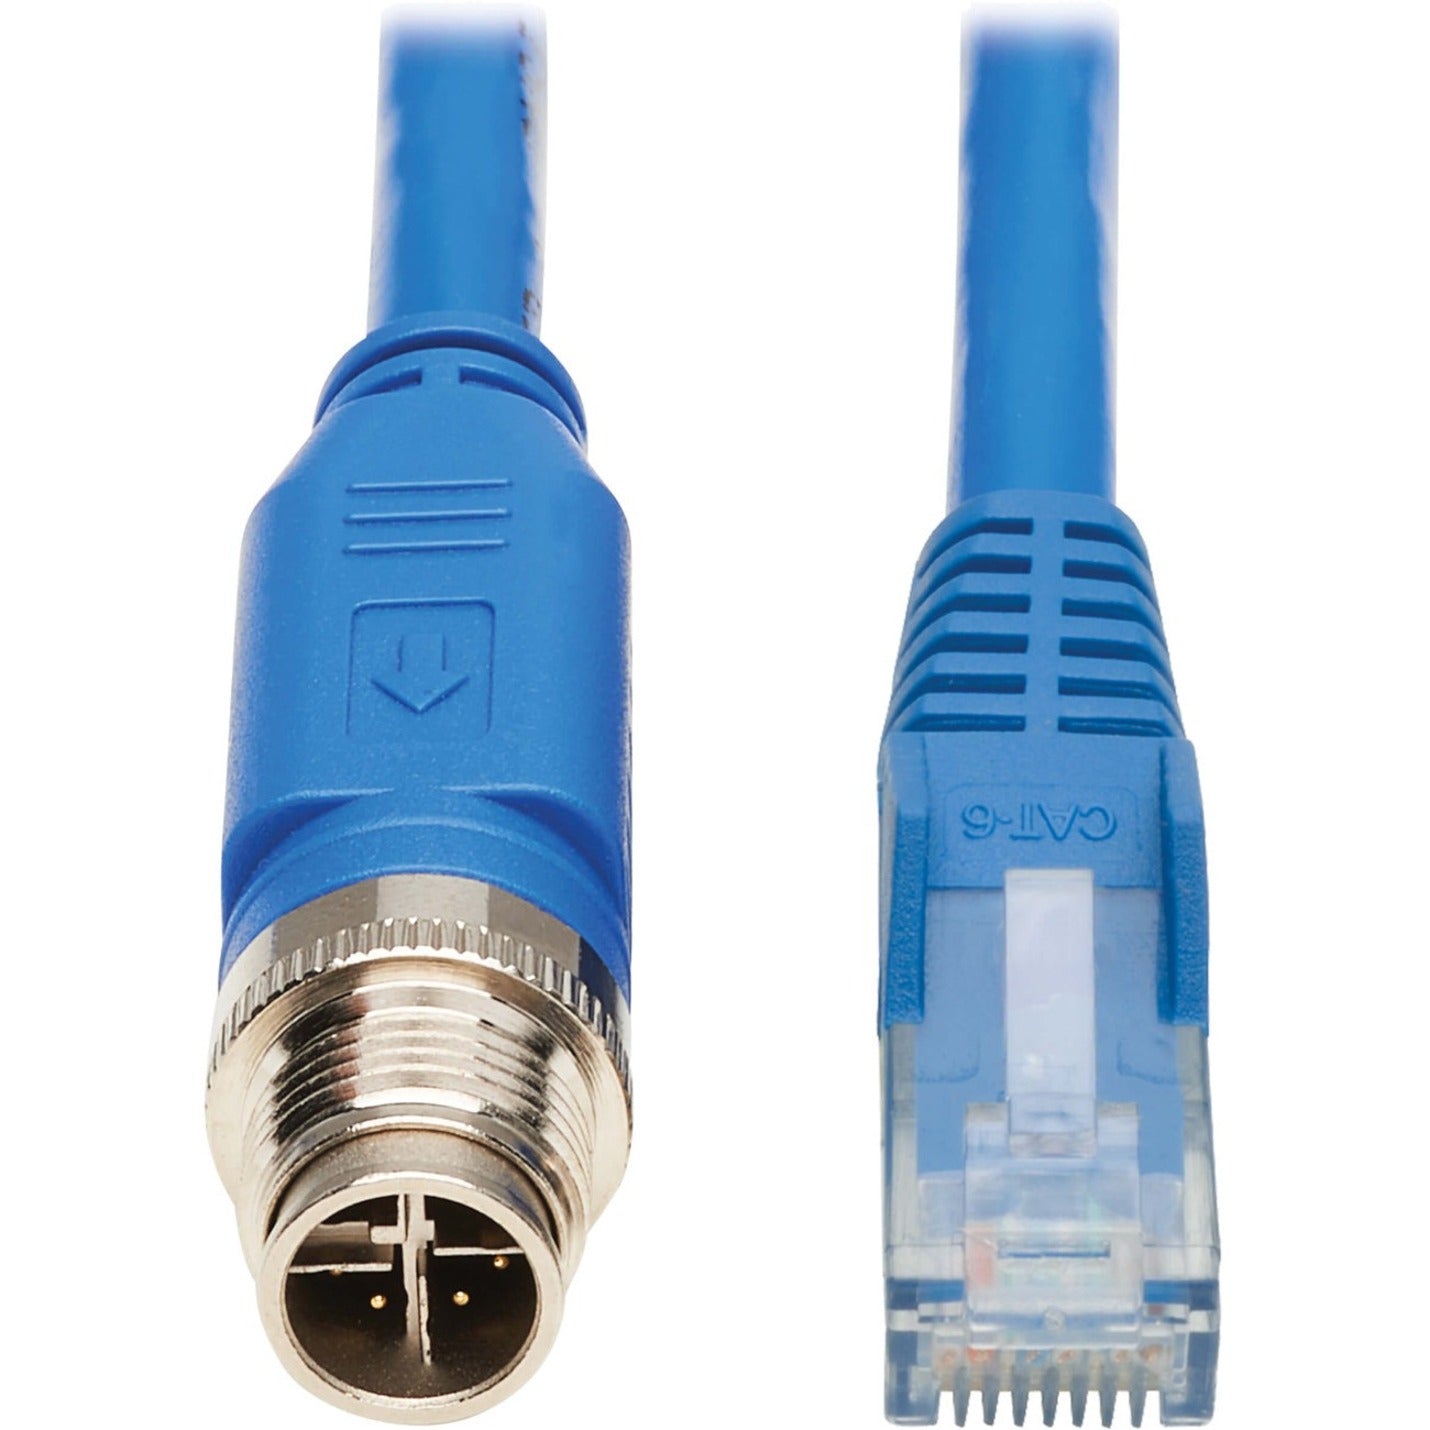 Tripp Lite NM12-602-02M-BL Cat.6 Network Cable, 6.56 ft, Blue, Temperature Resistant, Corrosion Resistant, Lockable, Dust Resistant, Water Resistant, Damage Resistant, Moisture Resistant, PoE++, Heat Resistant, Vibration Resistant